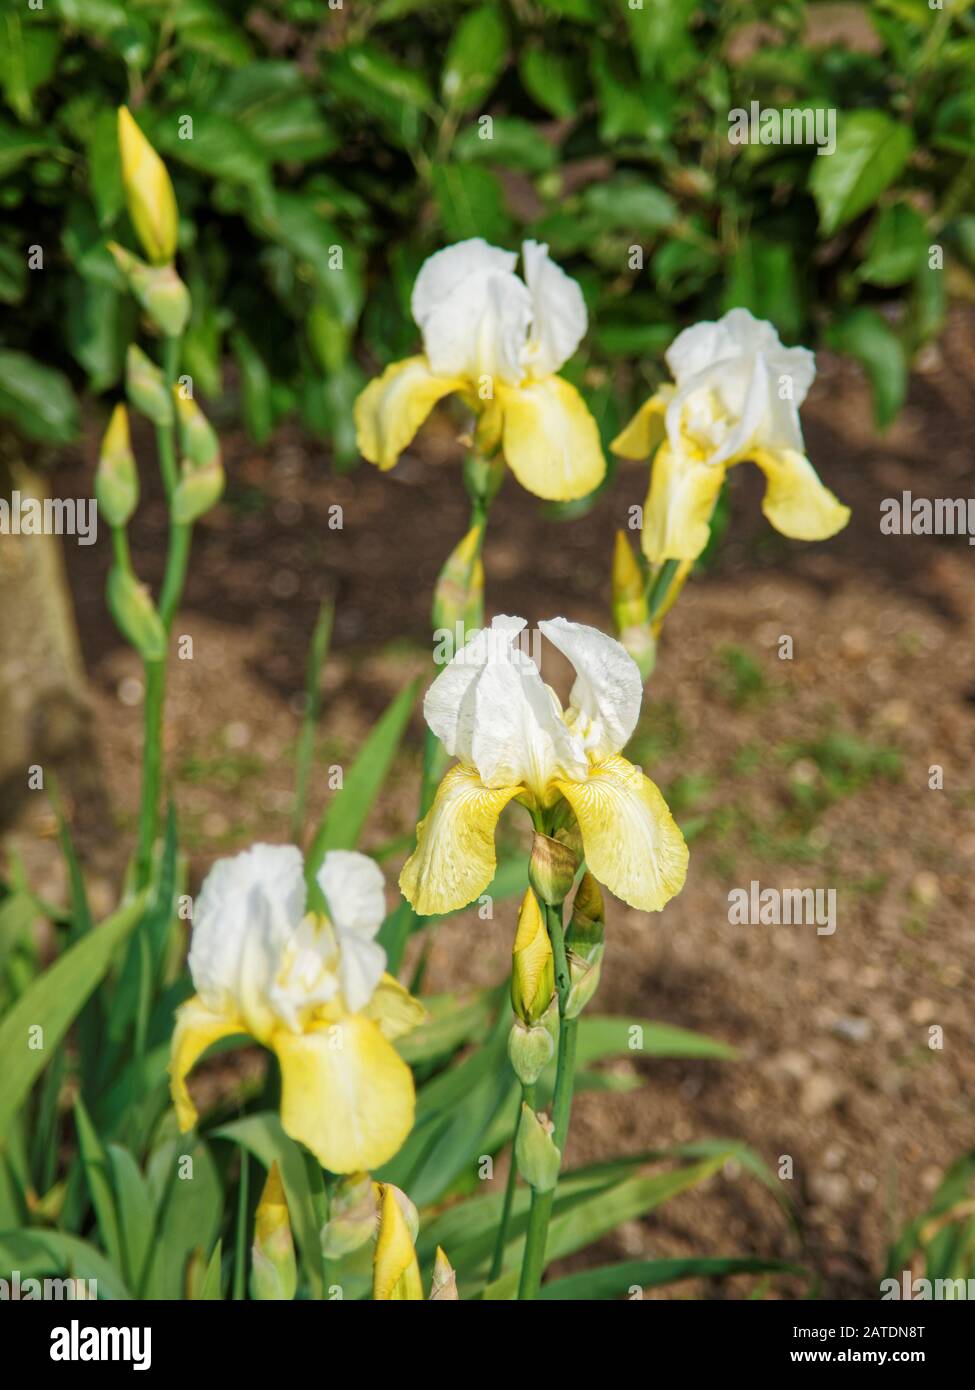 Iris blanc et jaune dans le jardin de la cuisine Banque D'Images